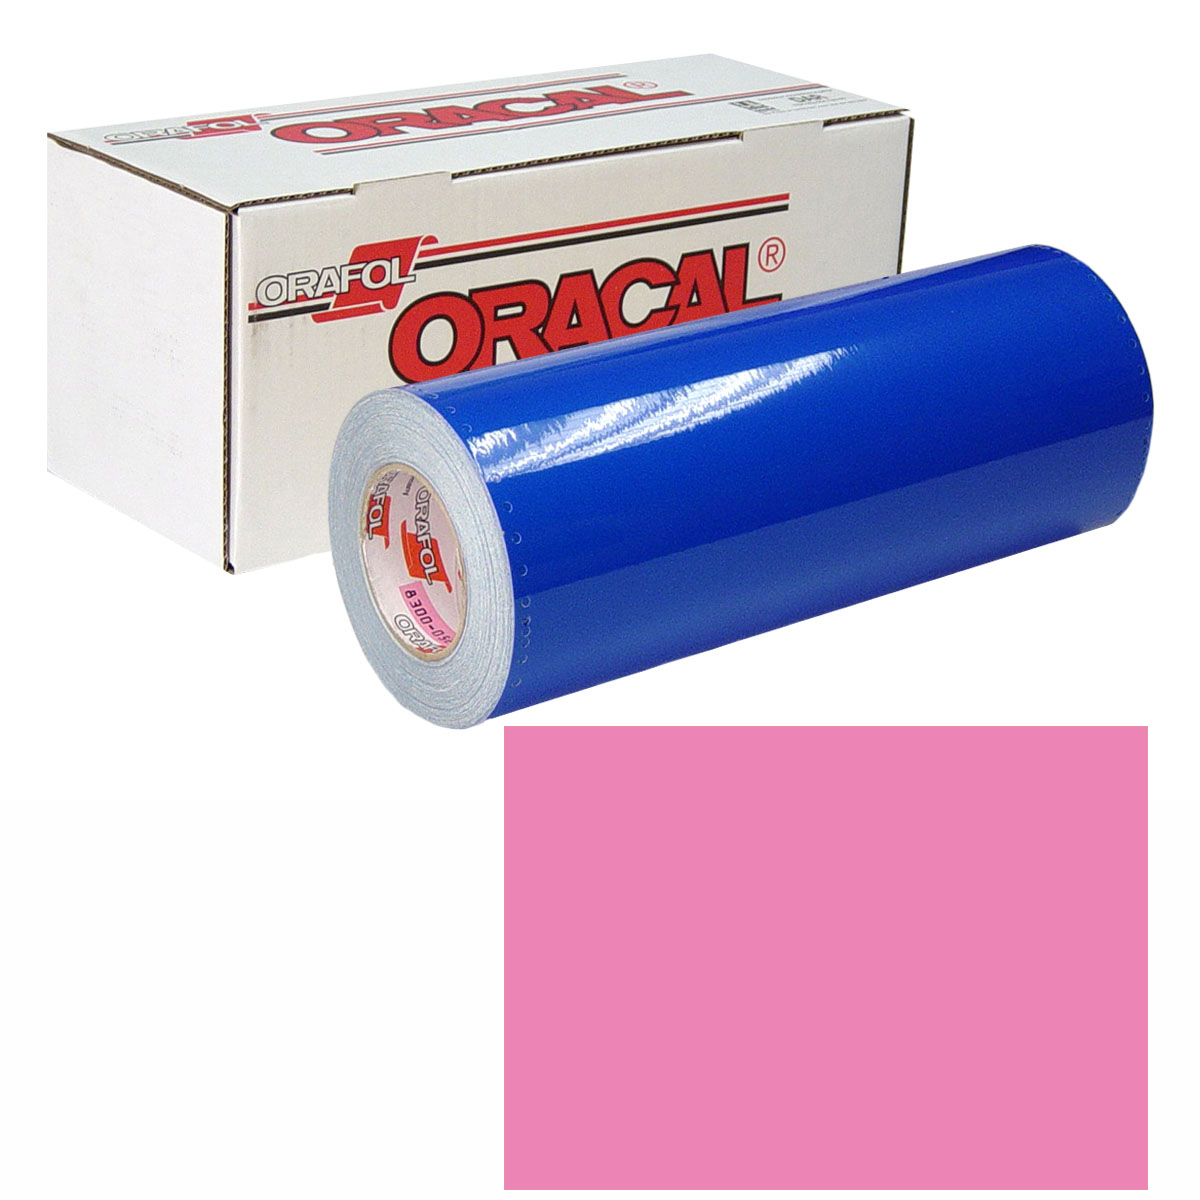 ORACAL 631 Unp 24in X 50yd 045 Soft Pink